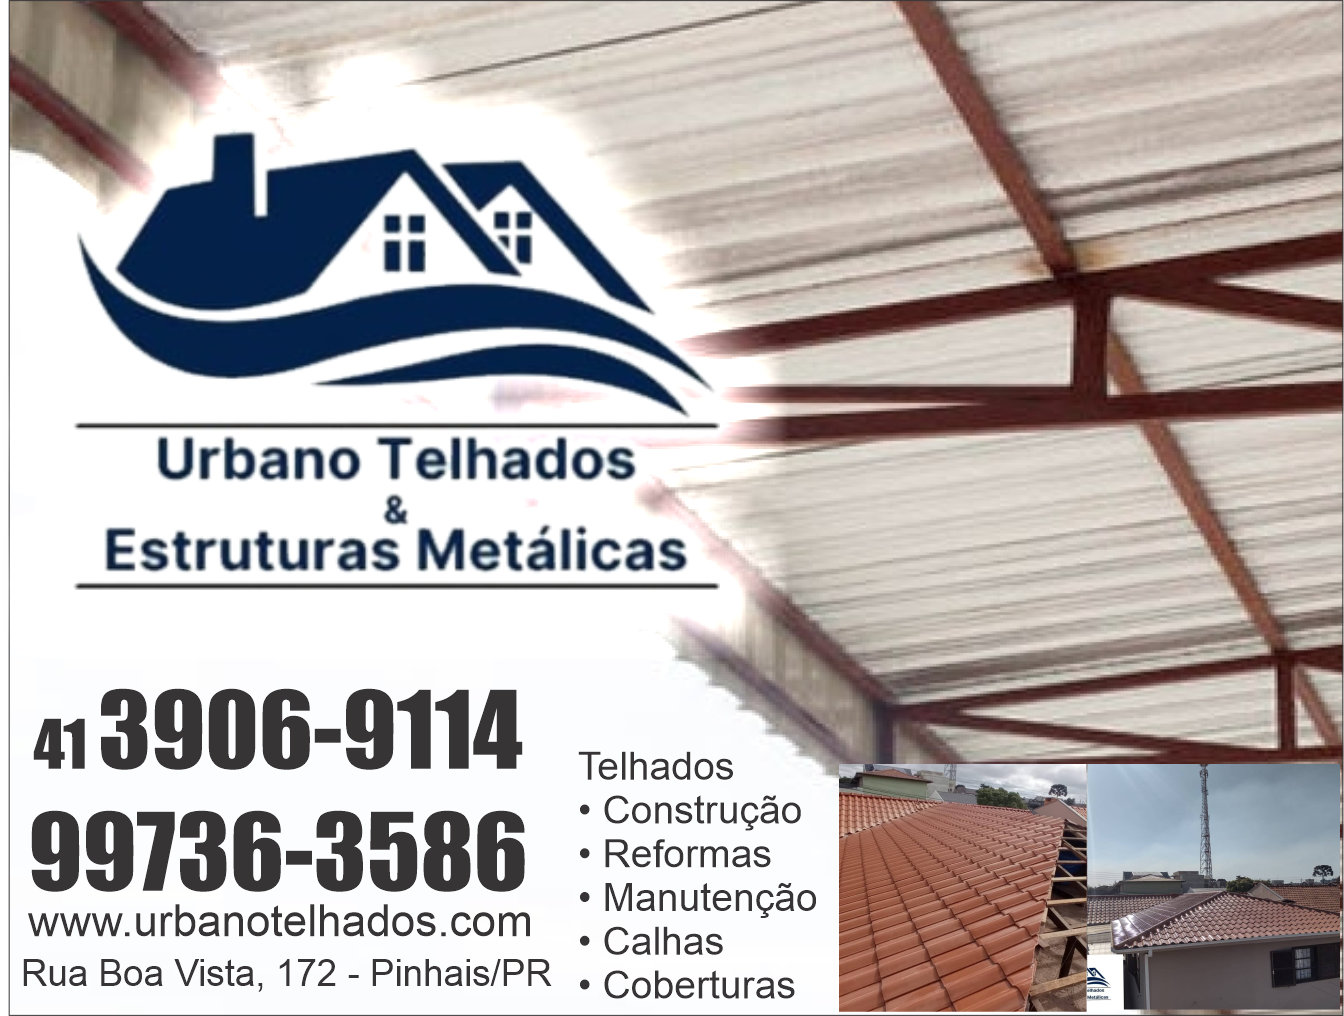 Urbano Telhados & Estruturas Metálicas      RUA SÃO JOSÉ DA BOA VISTA, 172, CURITIBA - PR  Fones: (41) 3906-9114 / (41) 99736-3586